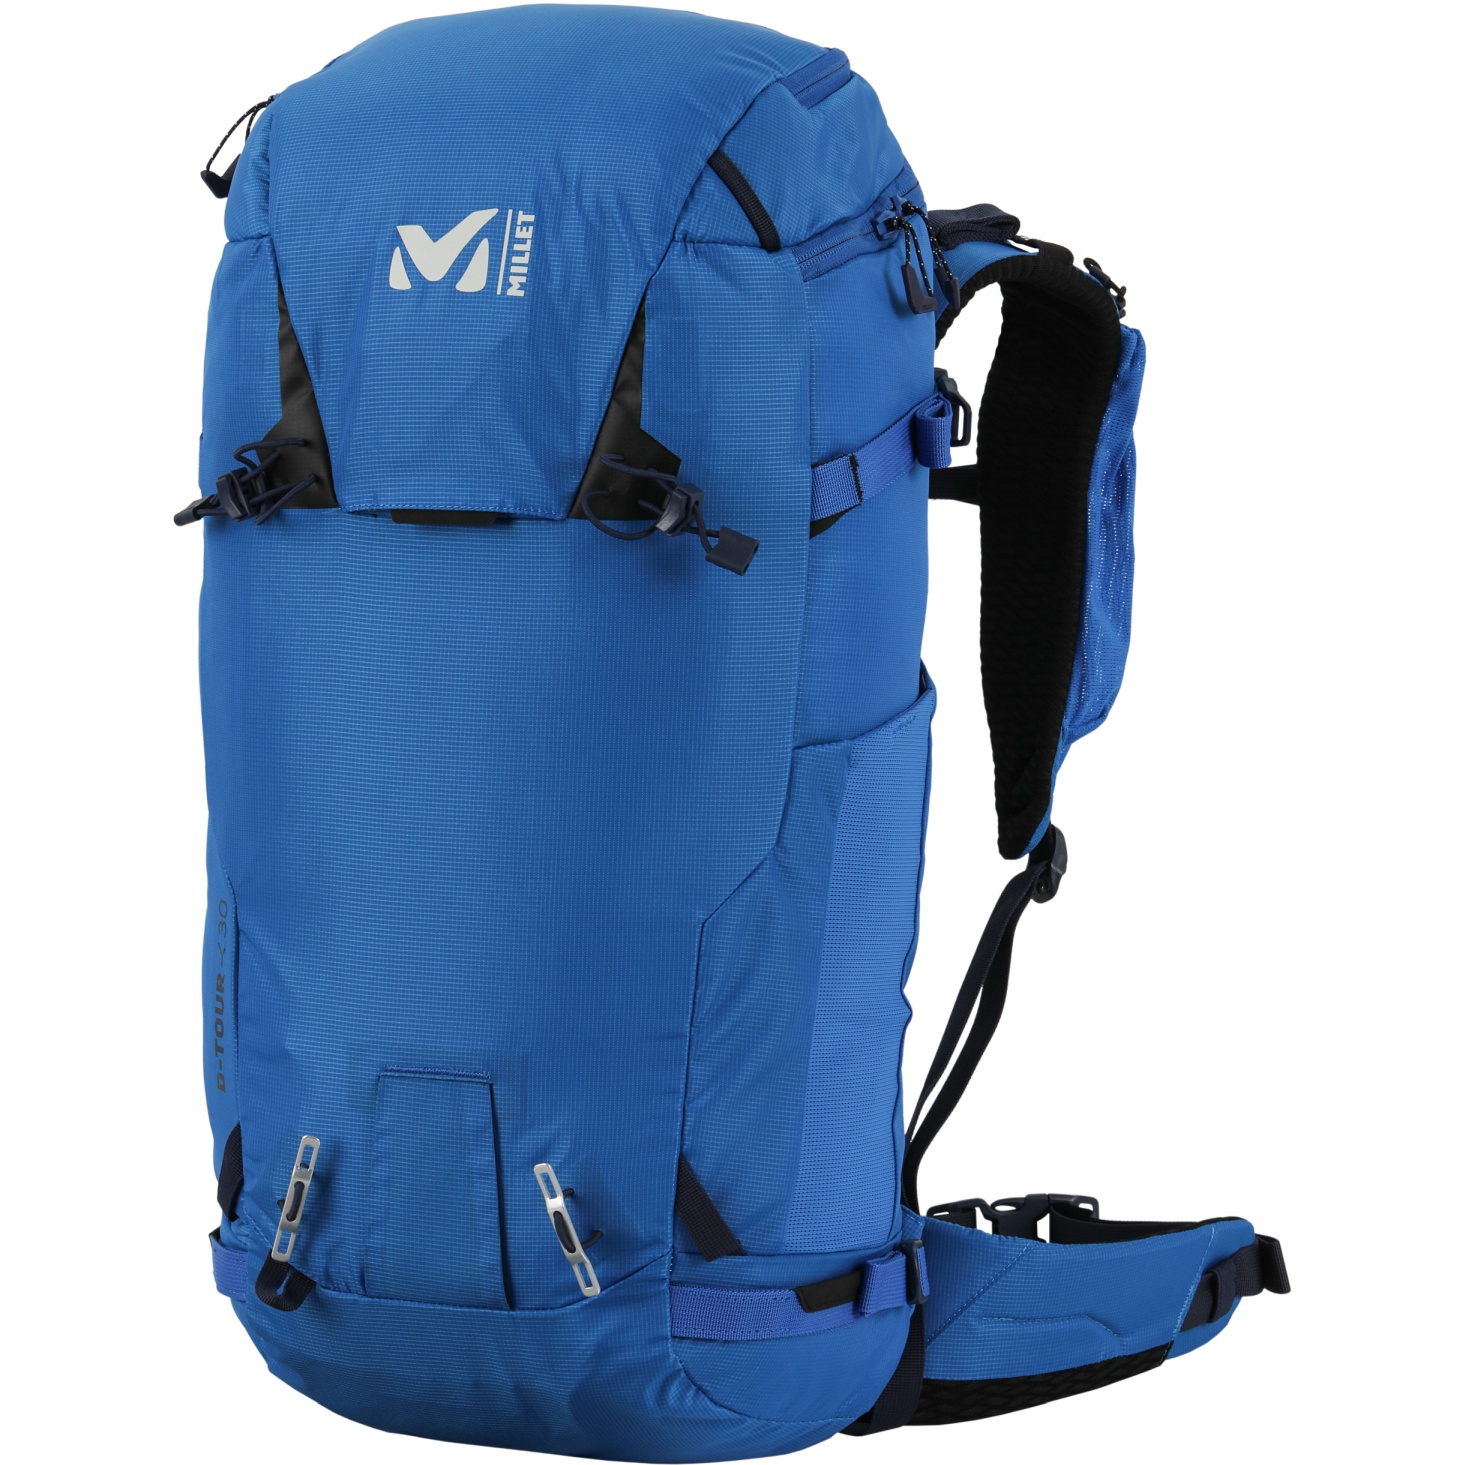 Airbag backpack Millet Trilogy 35 E2 (SAPHIR) - Alpinstore